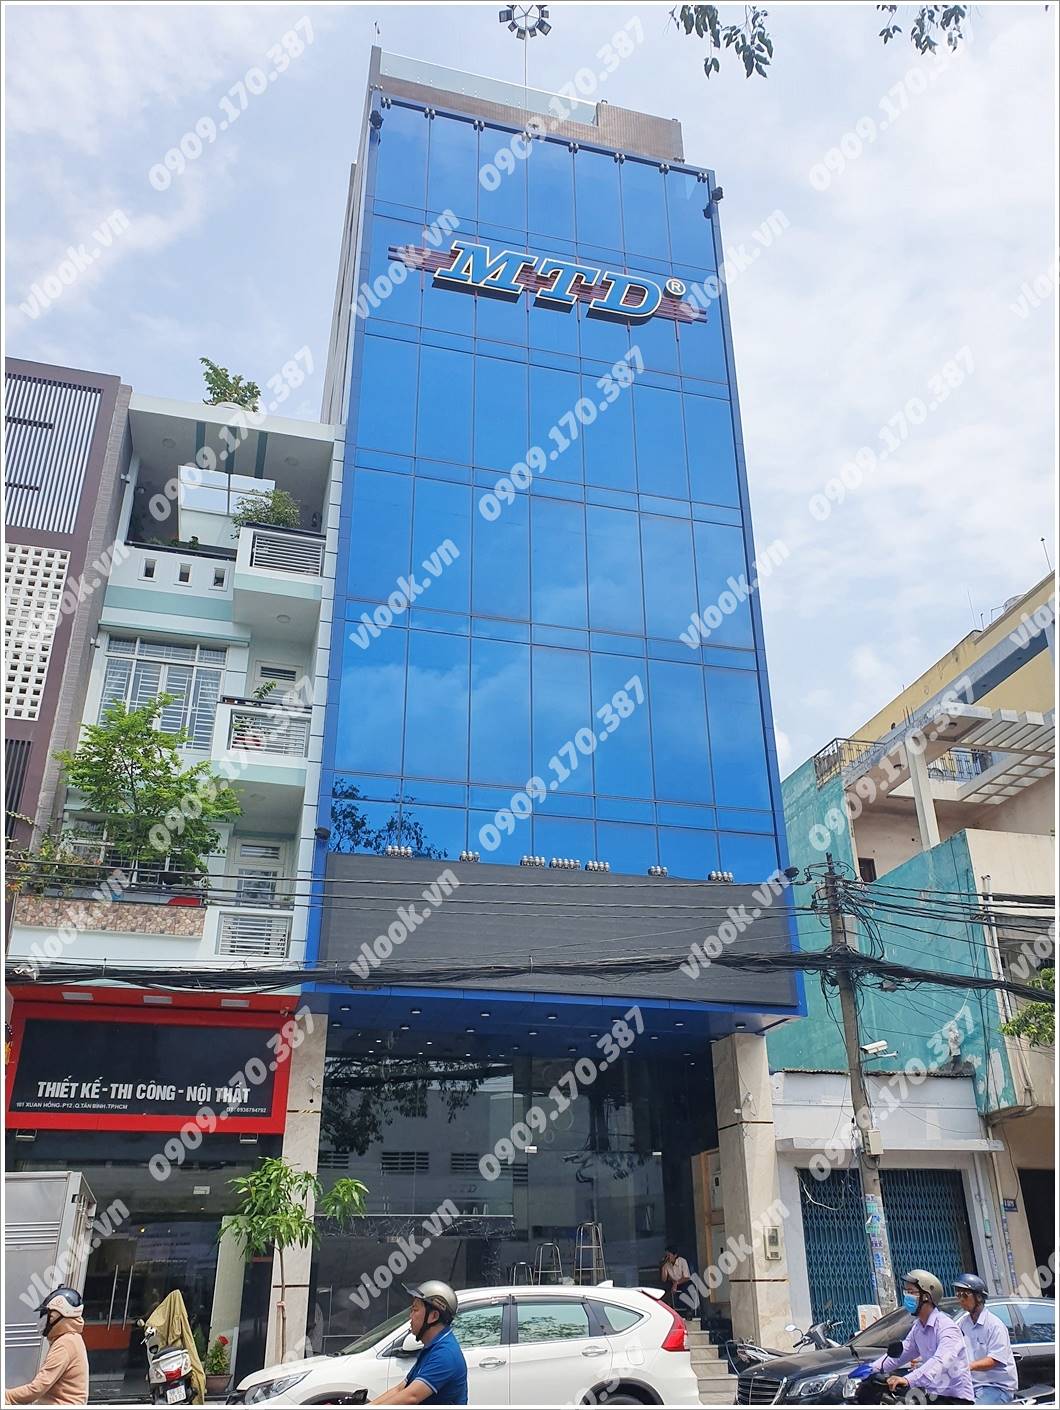 Mặt trước cao ốc cho thuê văn phòng MTD Building, Xuân Hồng, Quận Tân Bình, TPHCM - vlook.vn